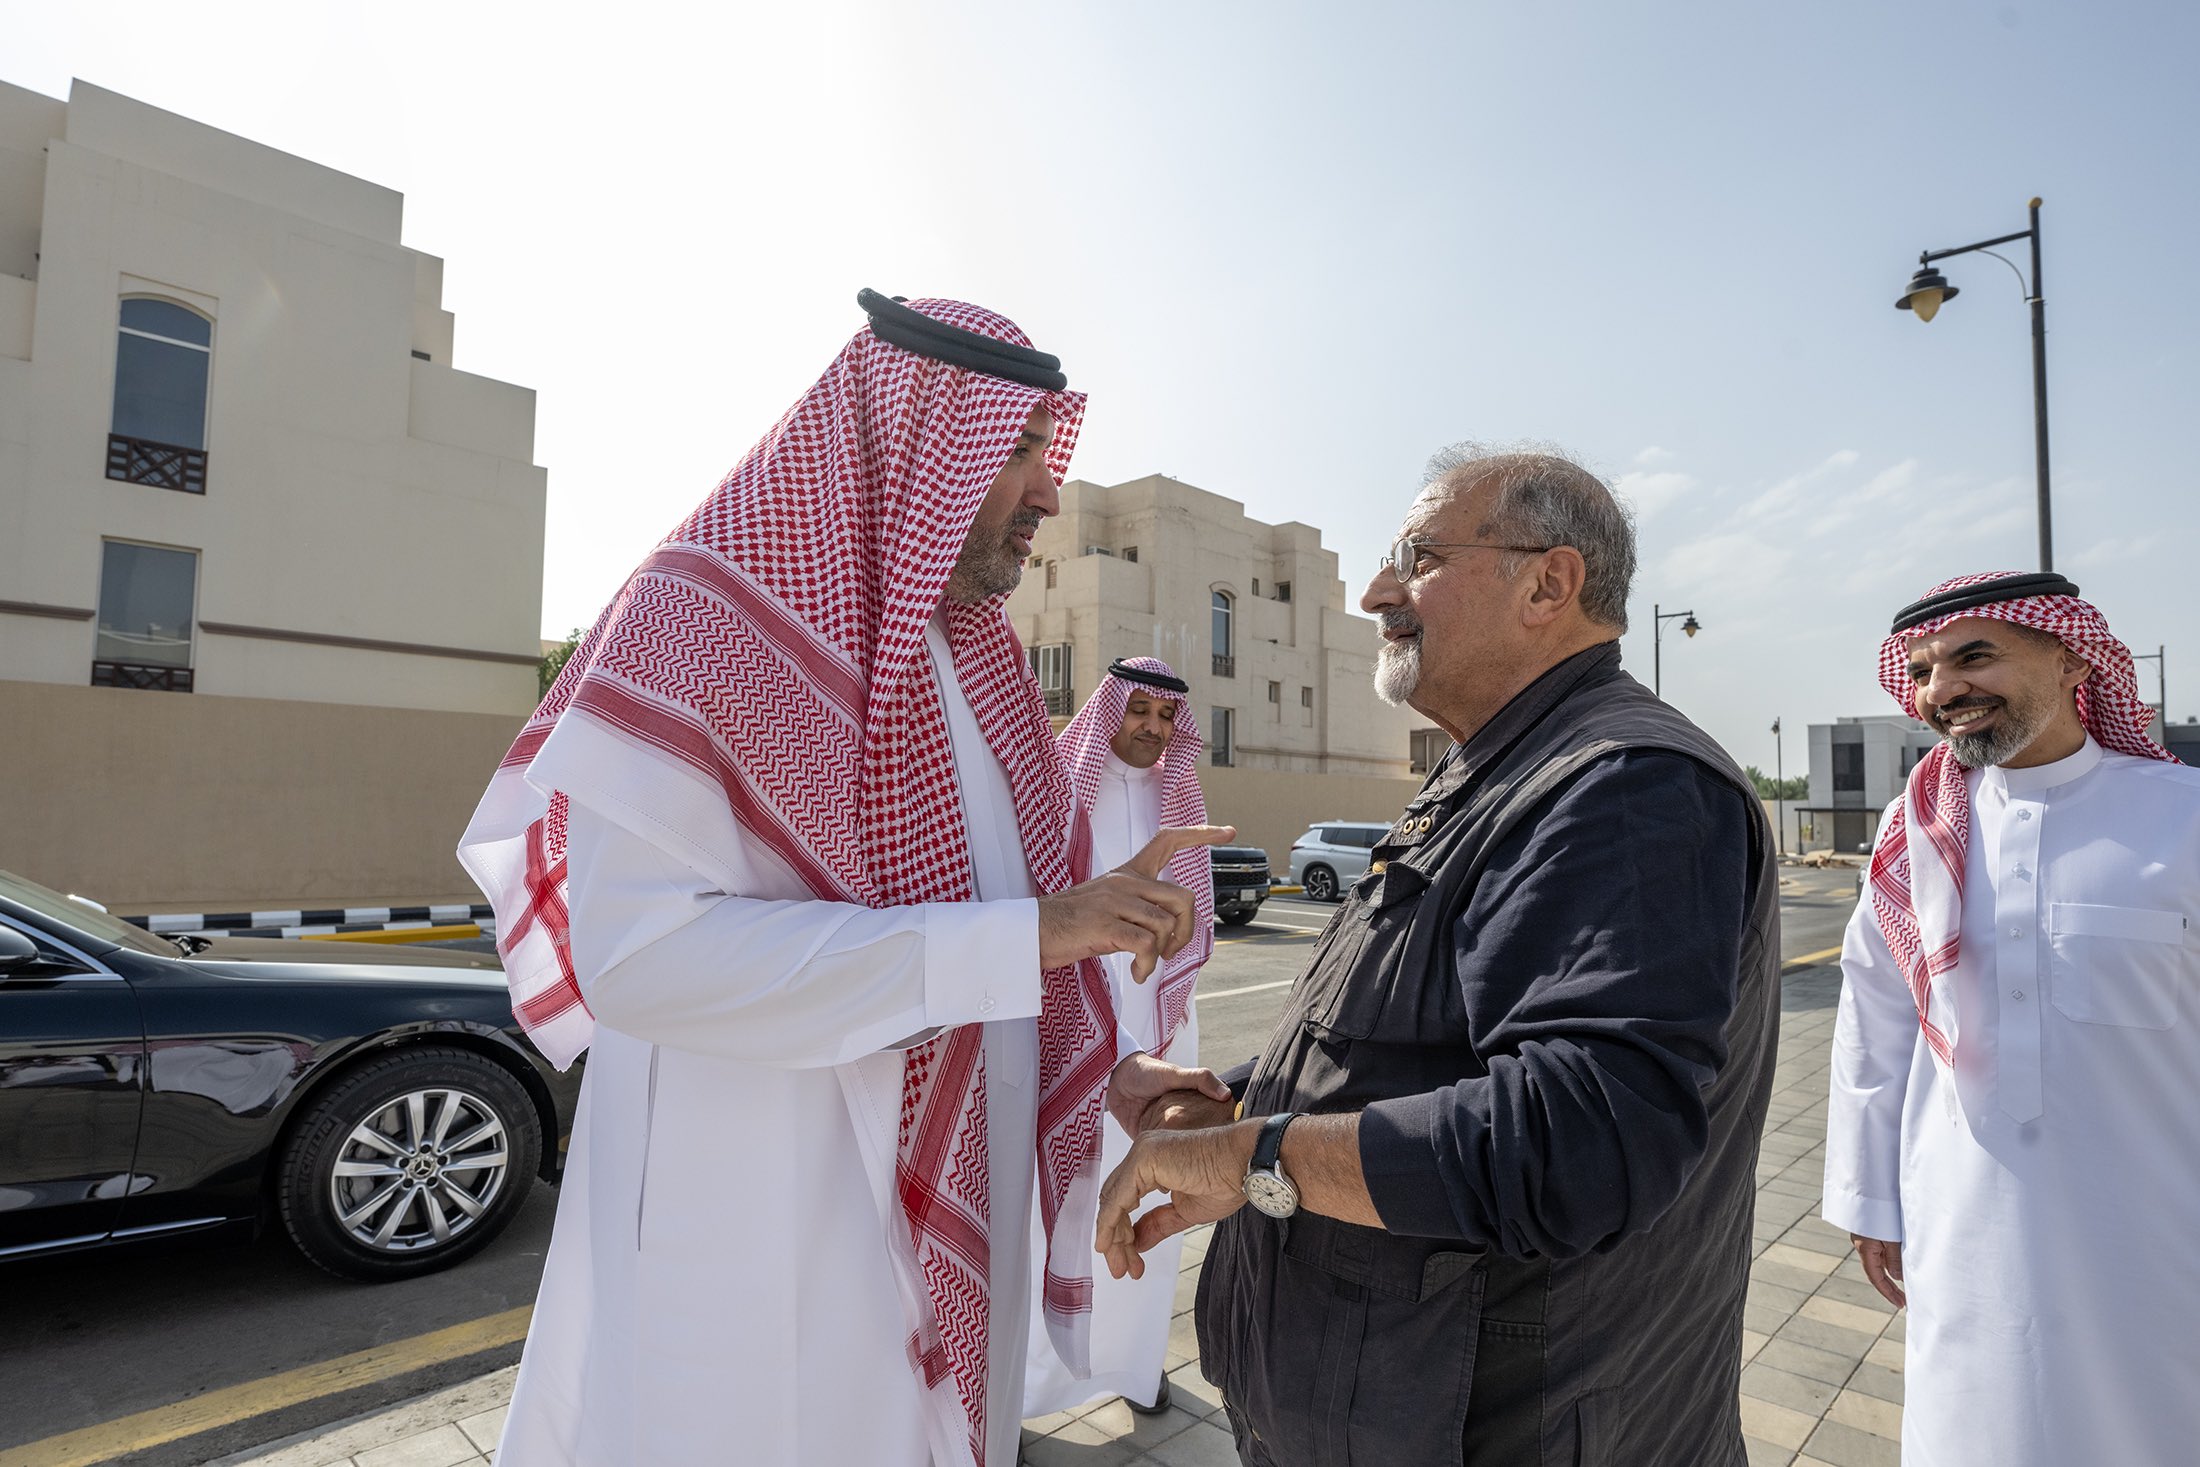 أمير منطقة المدينة المنورة يزور المعماري الدكتور راسم بن جمال بدران